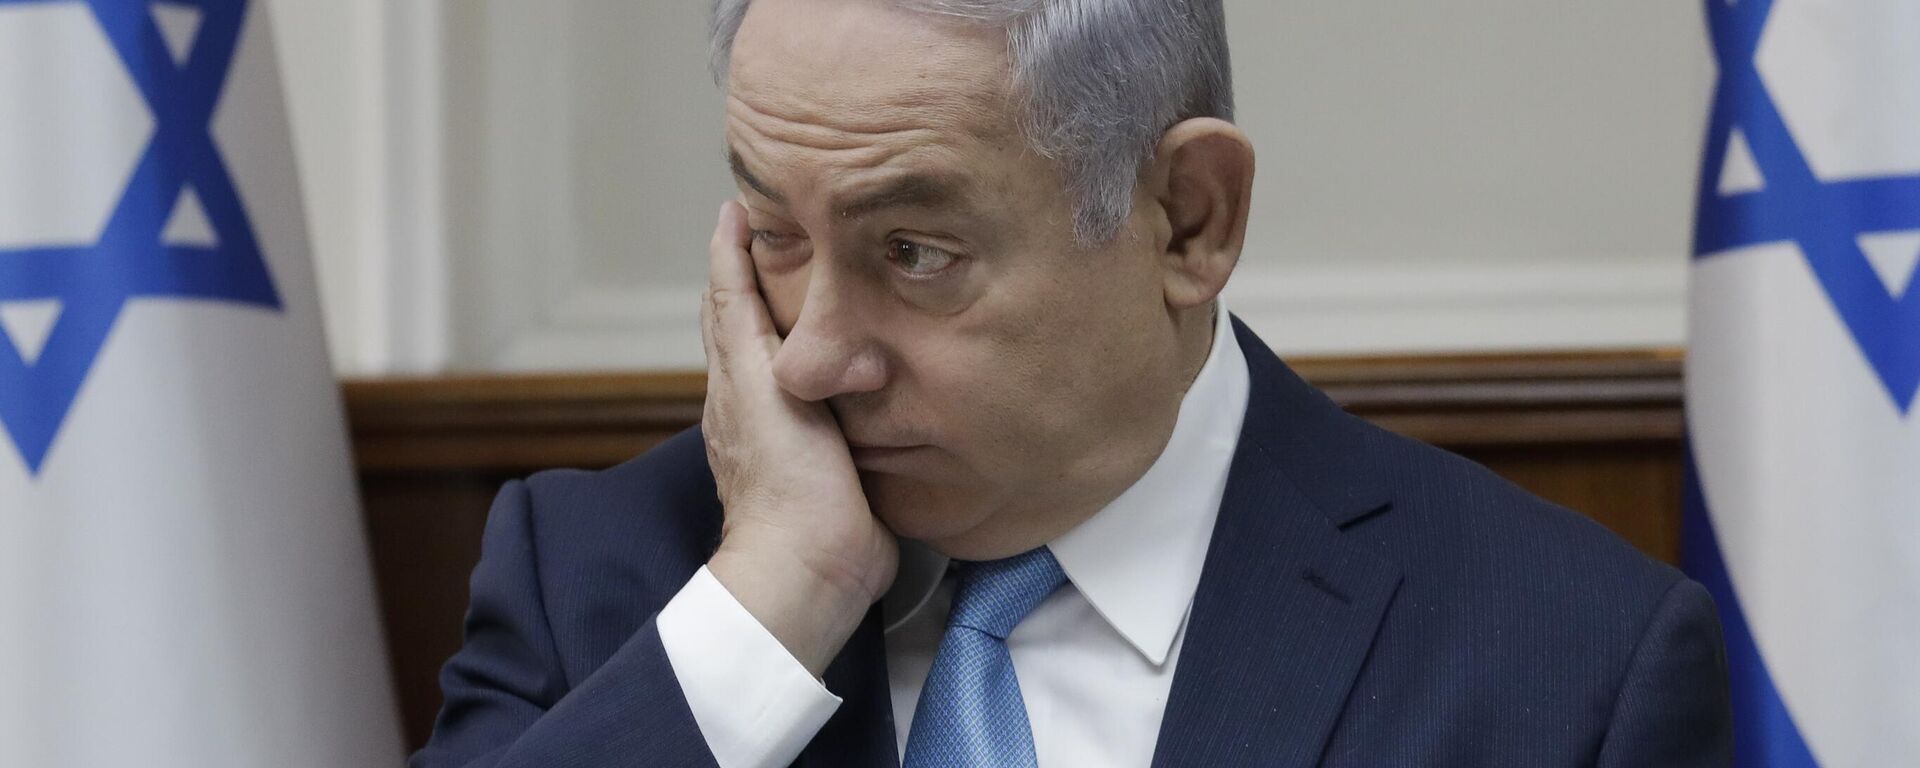 بنیامین نتانیاهو نخست وزیر اسرائیل در جلسه کابینه در اورشلیم، چهارشنبه، 3 ژانویه 2018 شرکت می کند - Sputnik International 1920 2024/04/17